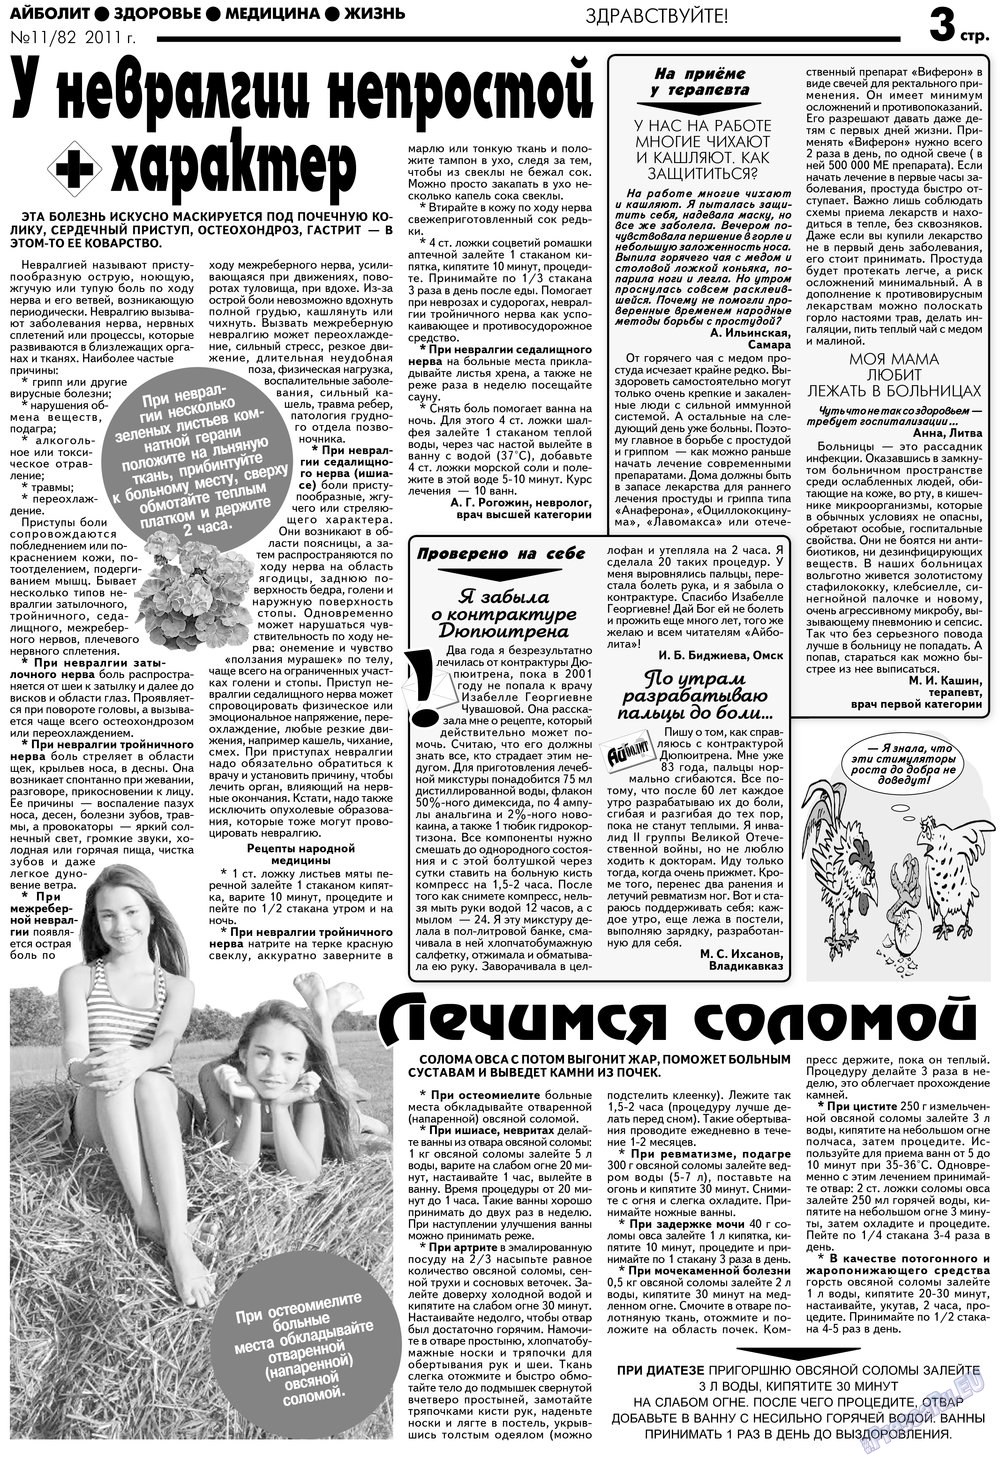 АйБолит, газета. 2012 №11 стр.3